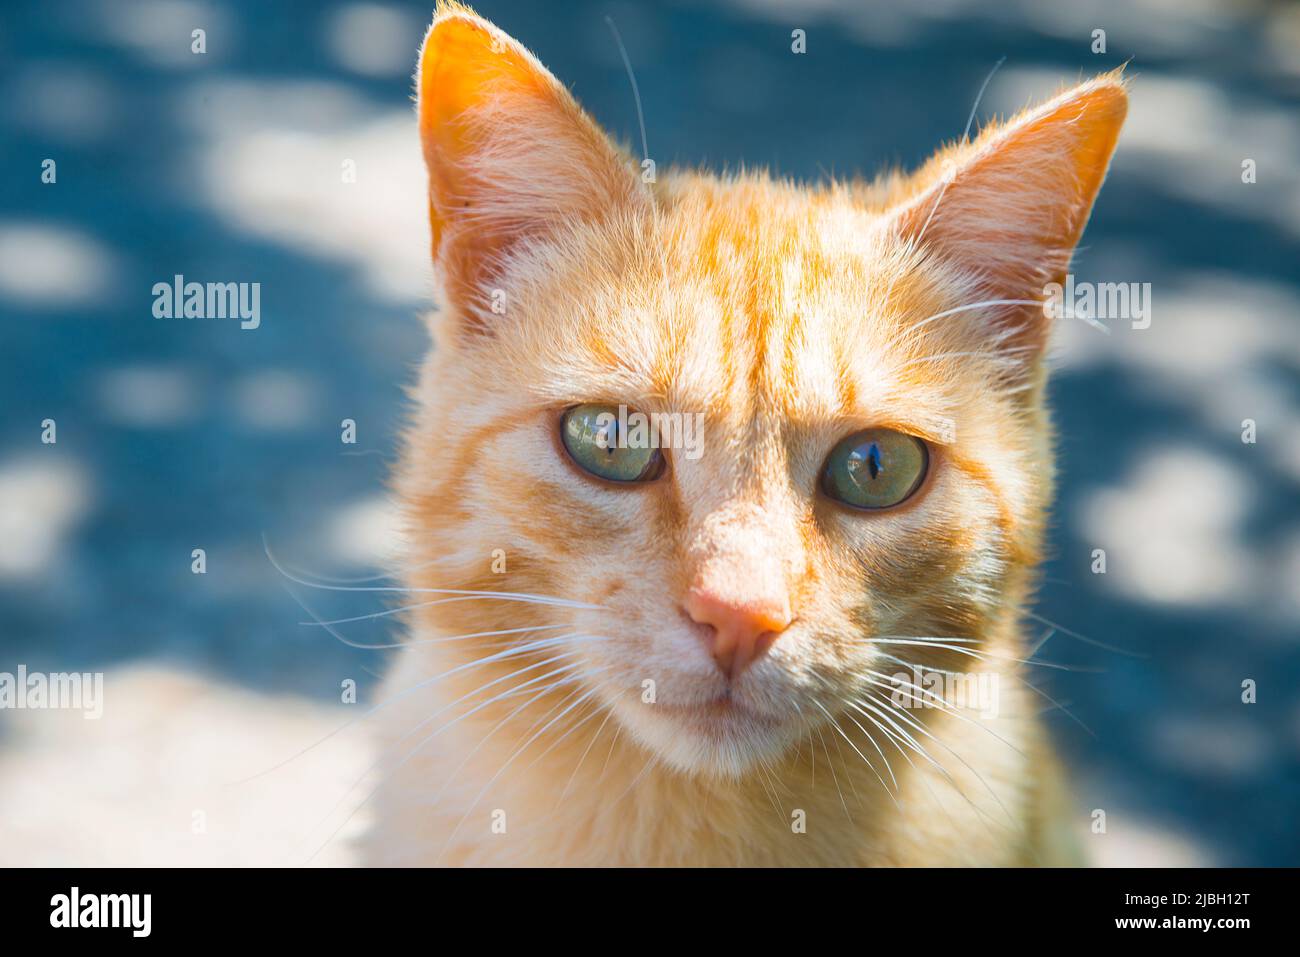 Portrait d'un chat tabby regardant l'appareil photo. Fermer la vue. Banque D'Images